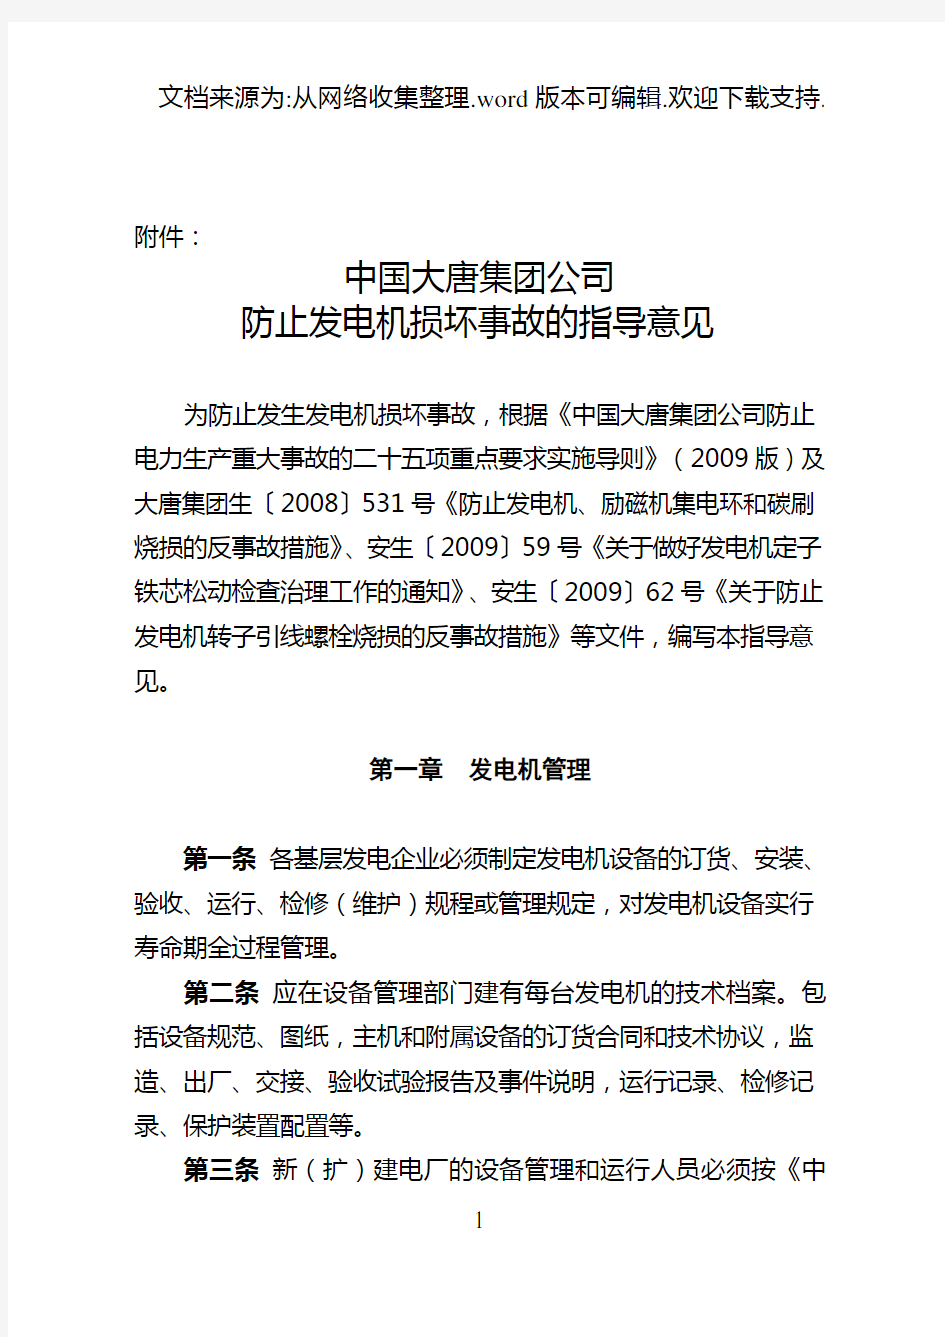 中国大唐集团公司防止发电机损坏事故的指导意见